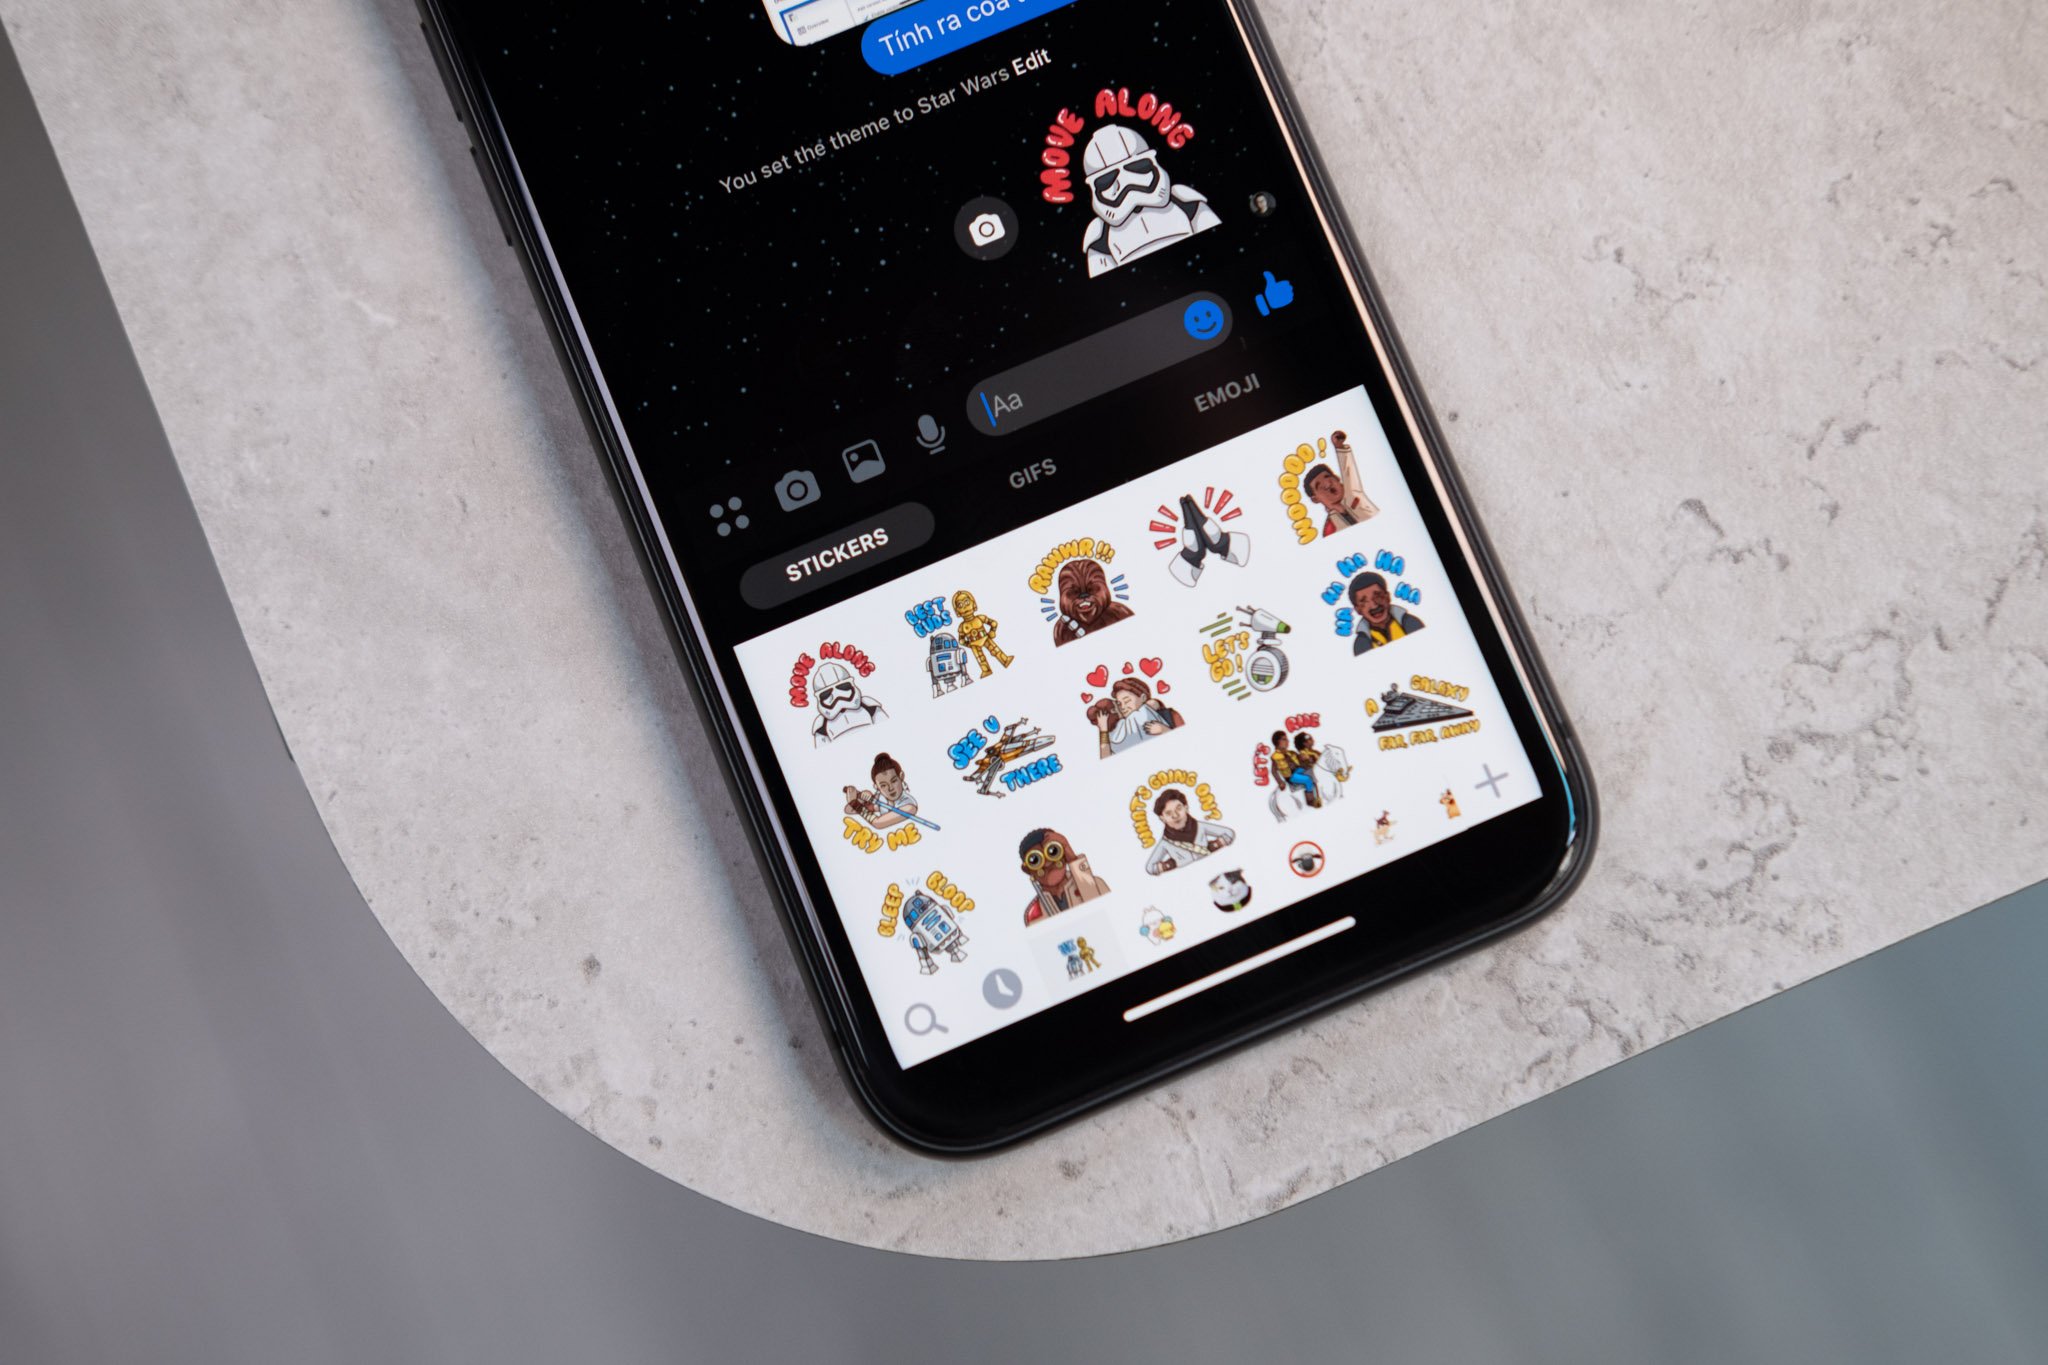 Facebook Messenger mới chia sẻ bộ theme Star Wars, anh em thử chưa?